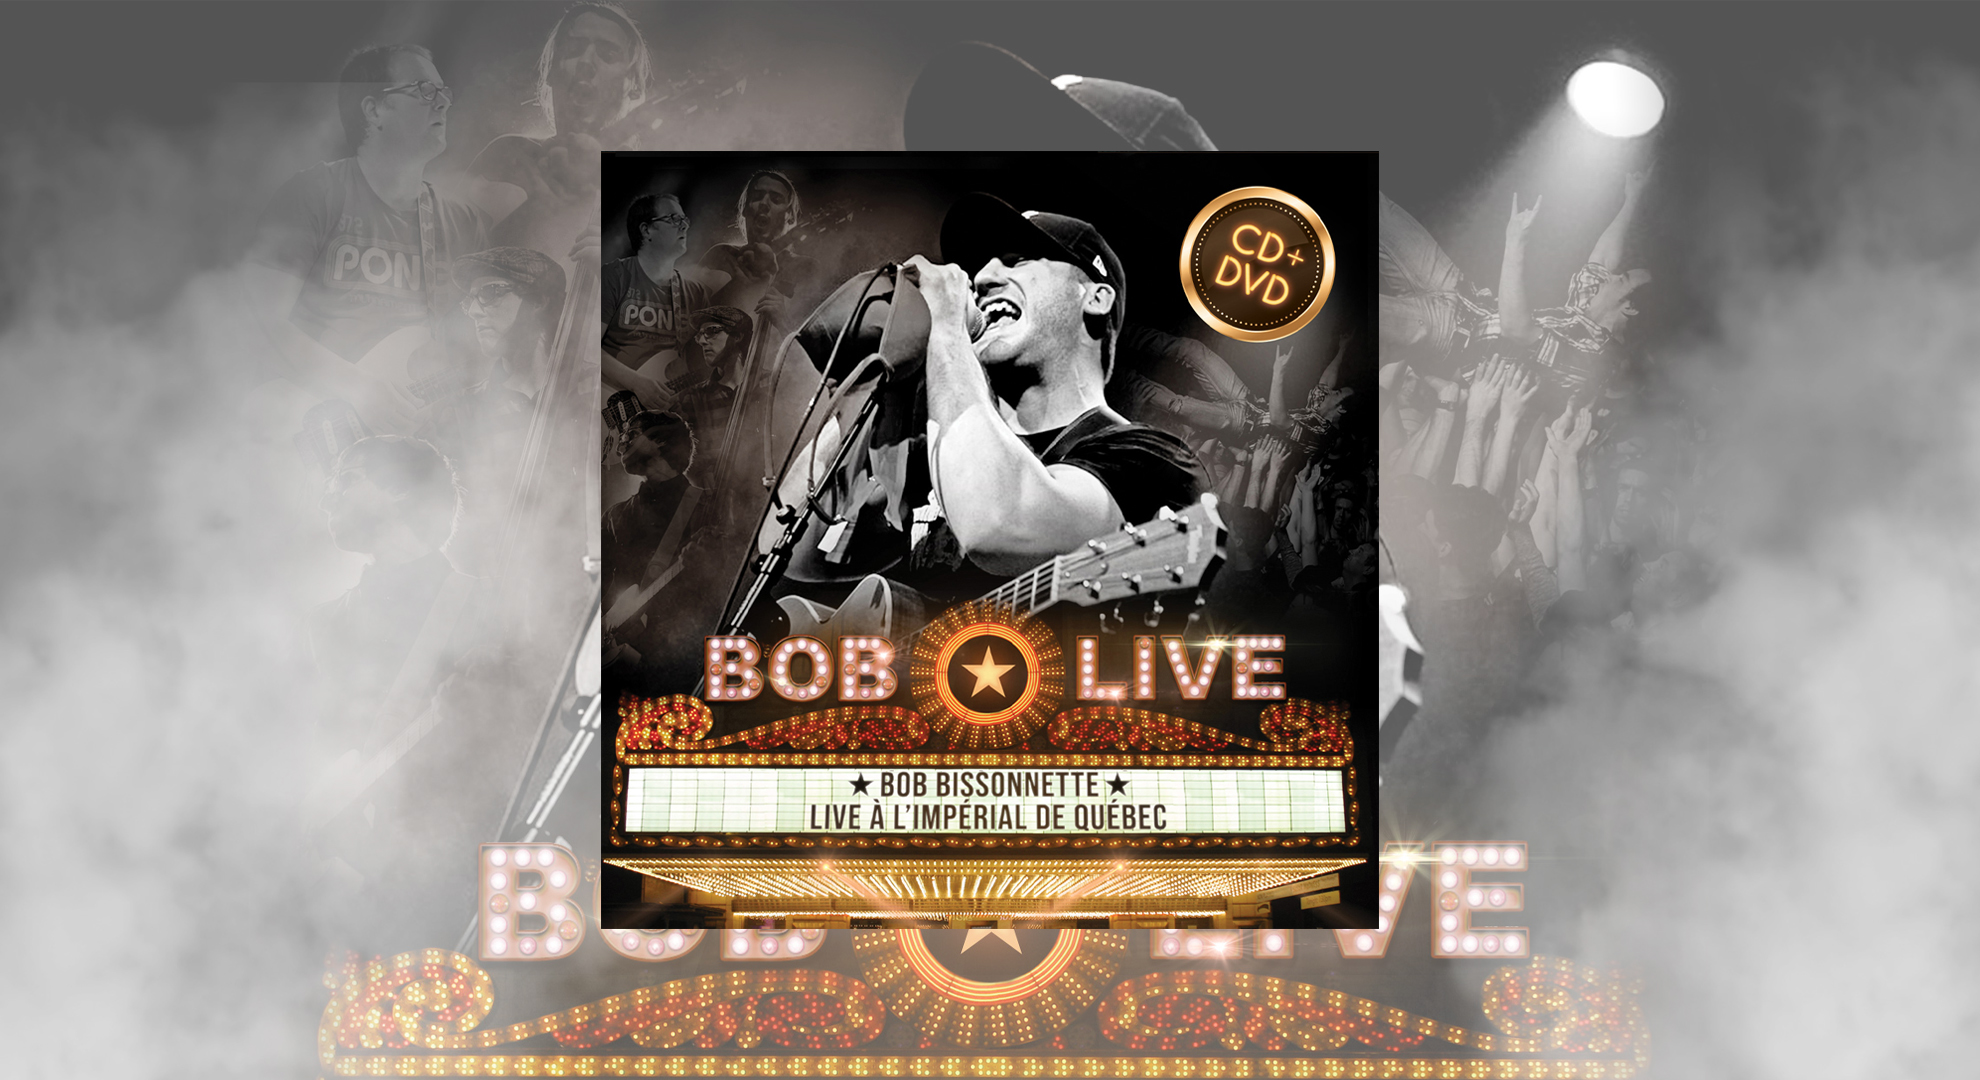 Cover - Bob LIVE - Site Internet v3